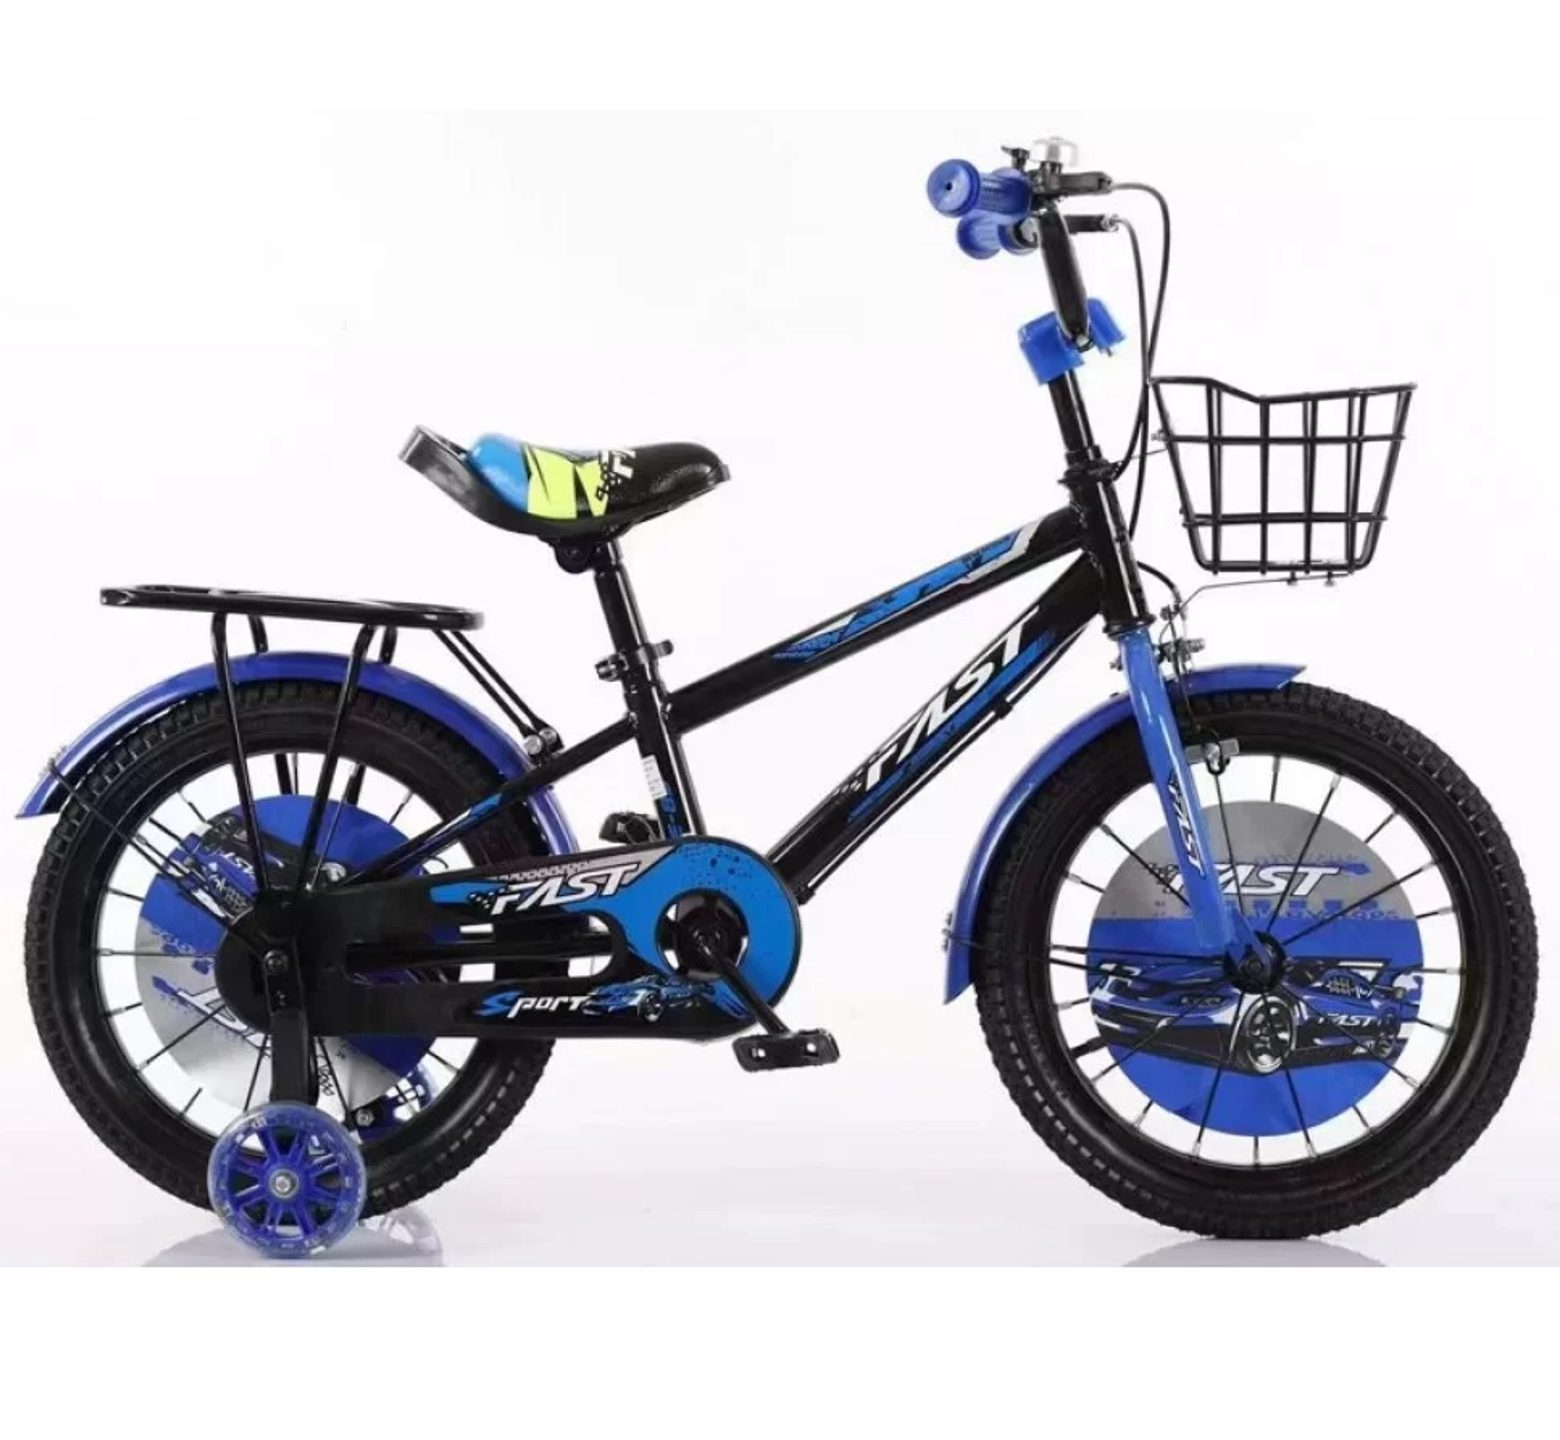 Ποδήλατο Fast Sport 12 - 16 ιντσών με καλάθι και σχάρα σε μαύρο μπλε χρώμα